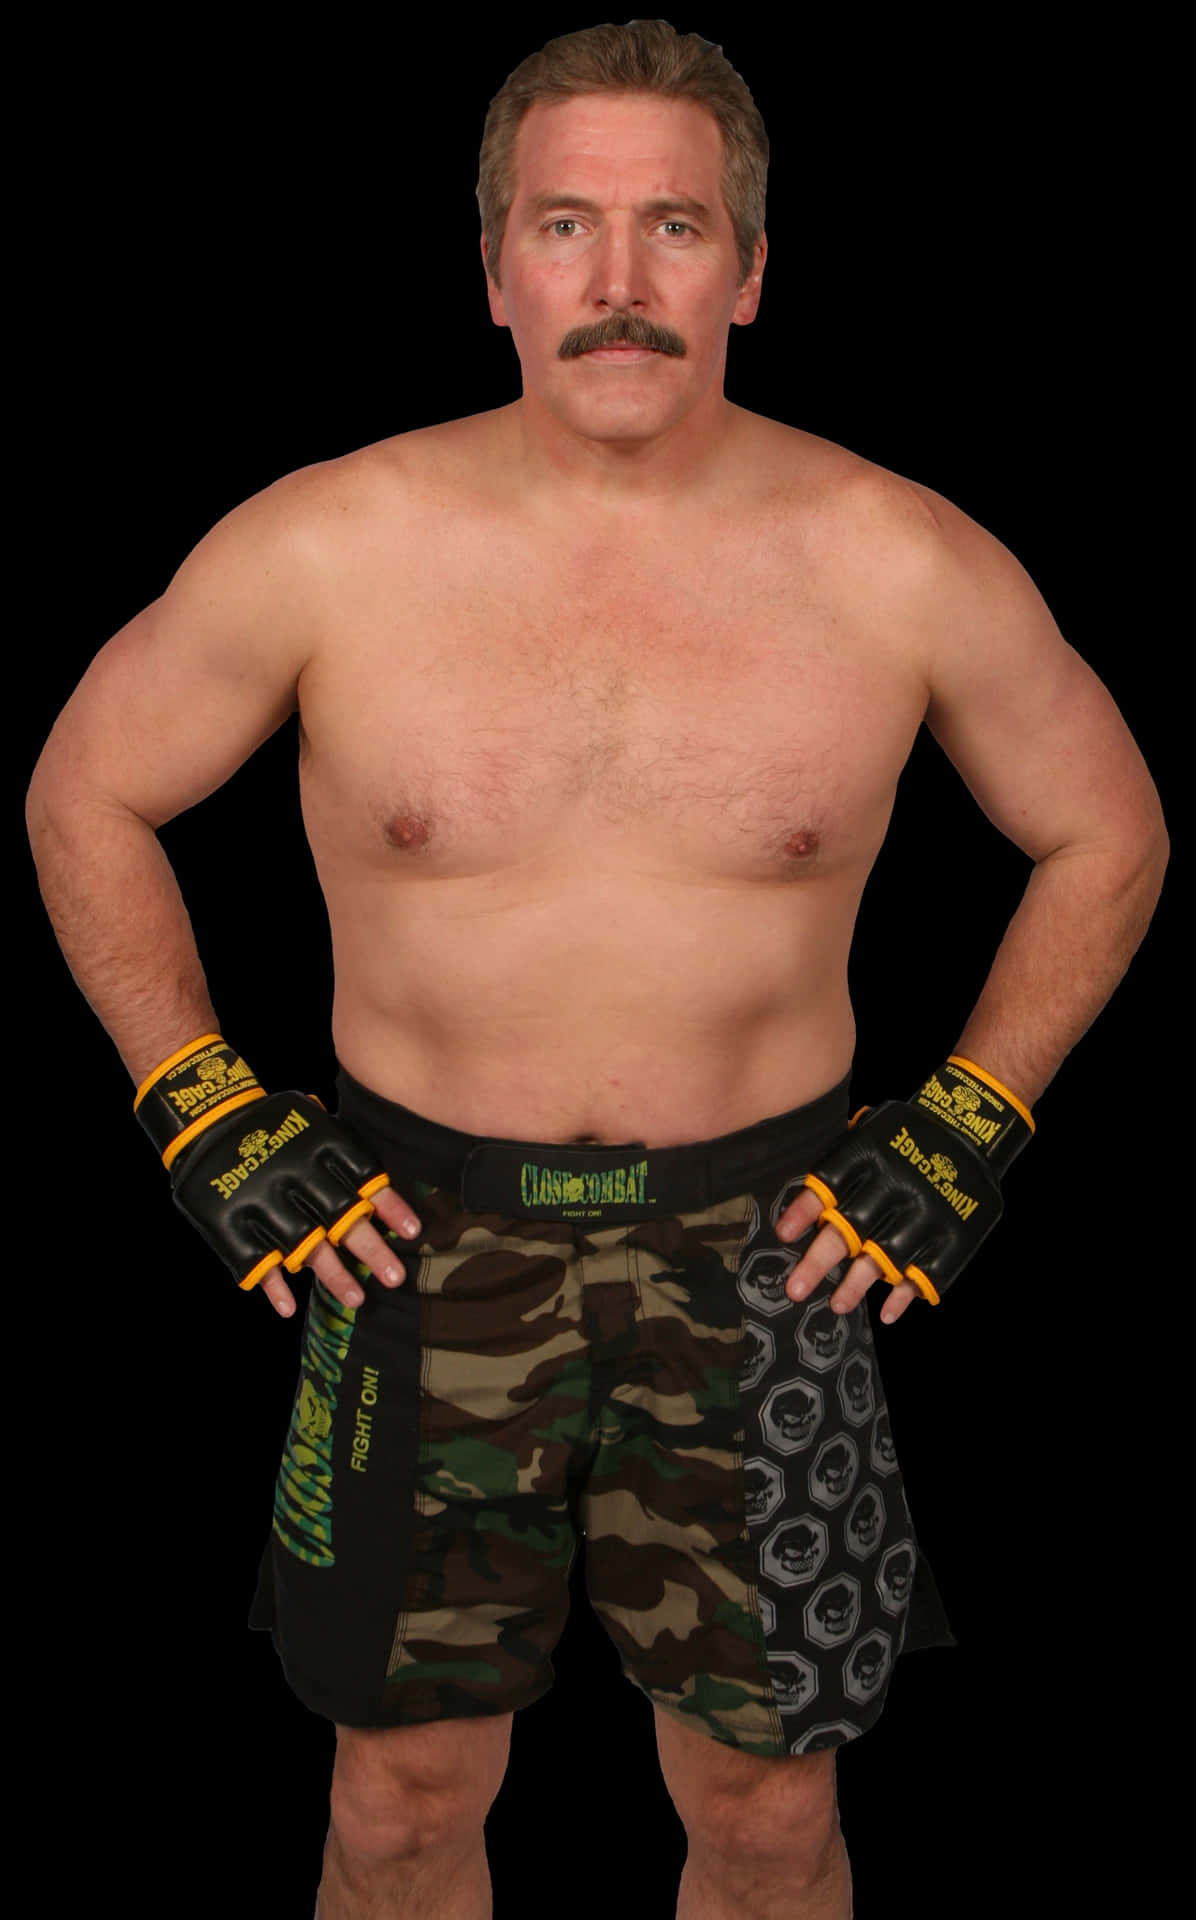 Professional Wrestler Dan Severn On White Background Wallpaper